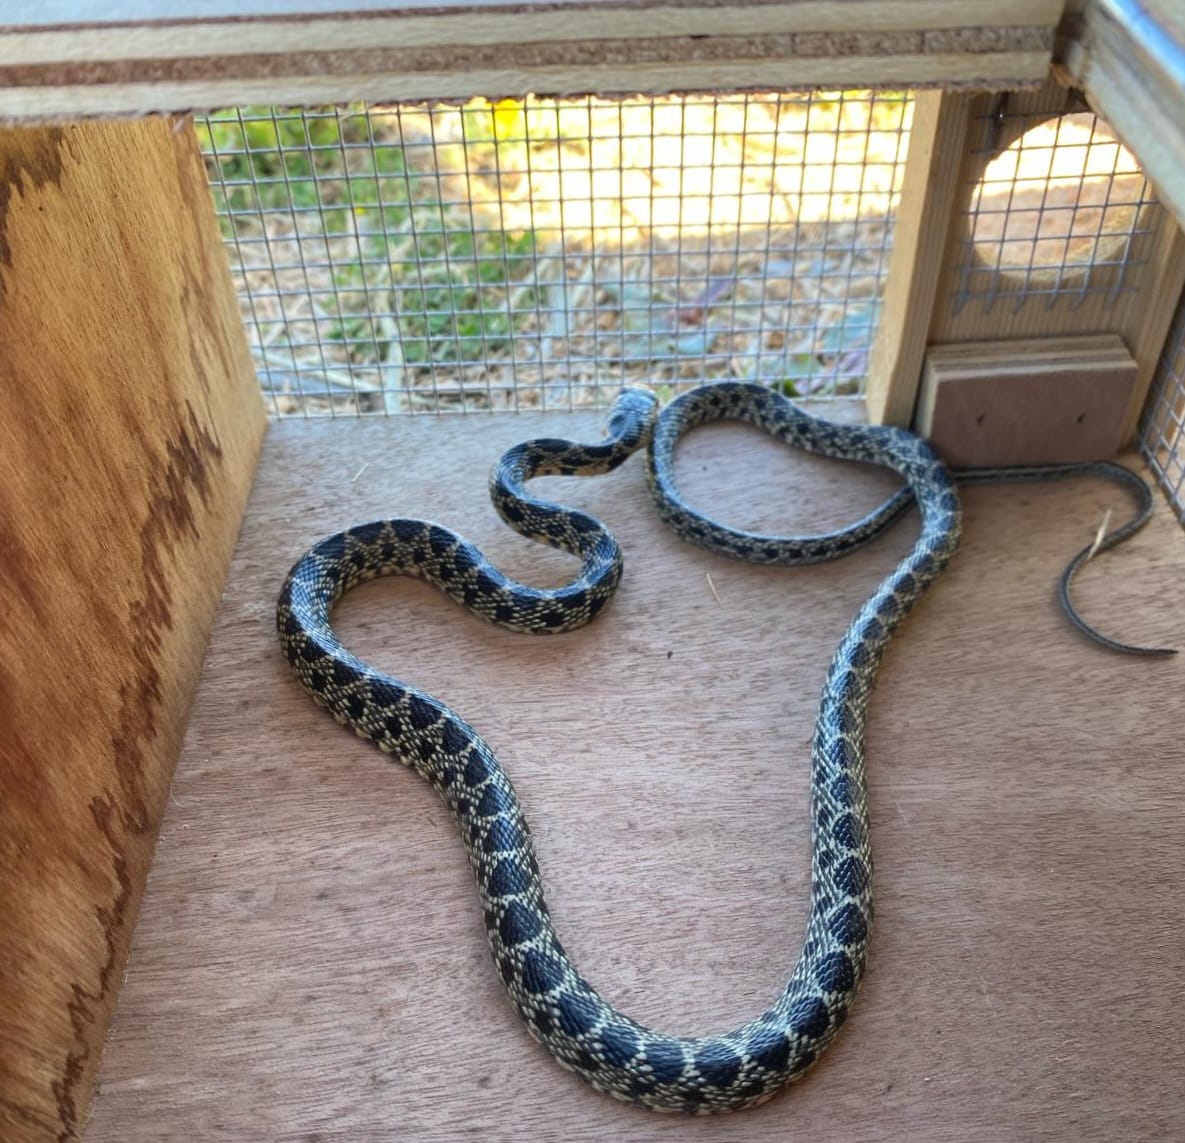 Exemplar de serp capturat a Eivissa